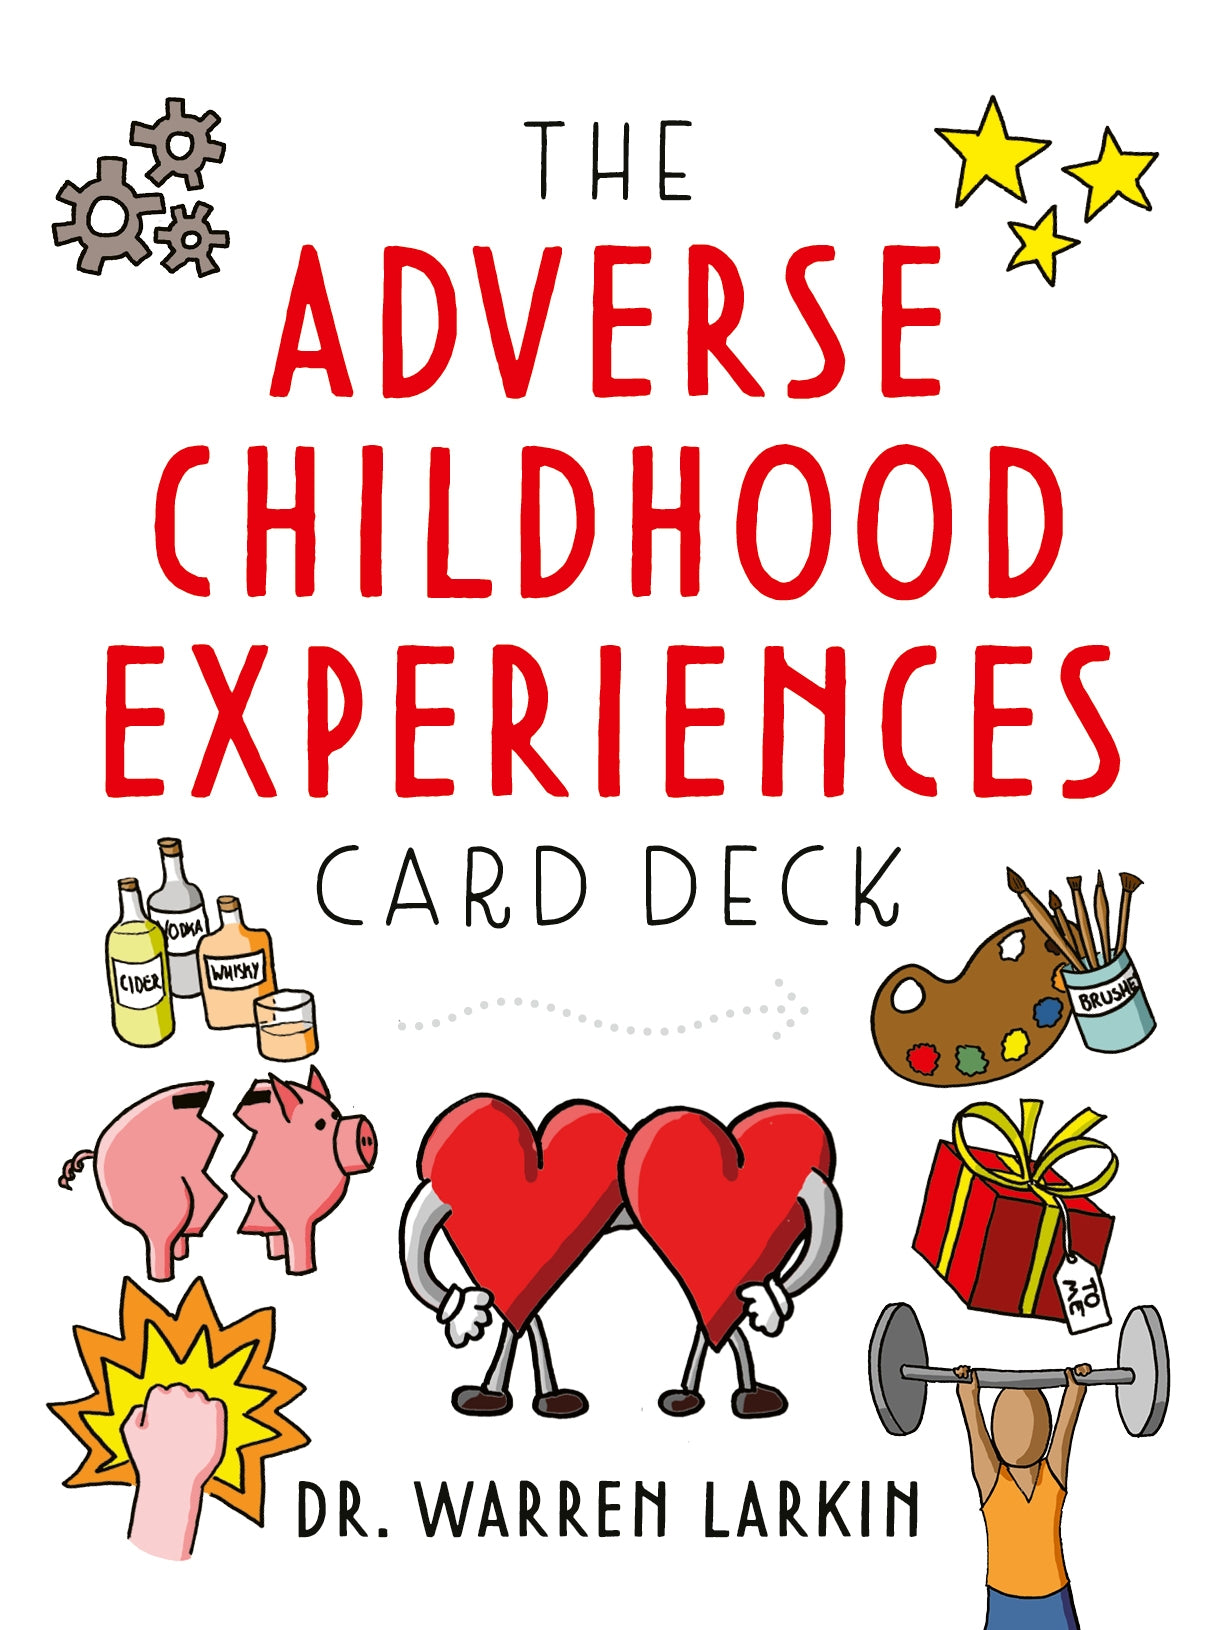 The Adverse Childhood Experiences Card Deck by Jon Dorsett, Warren Larkin